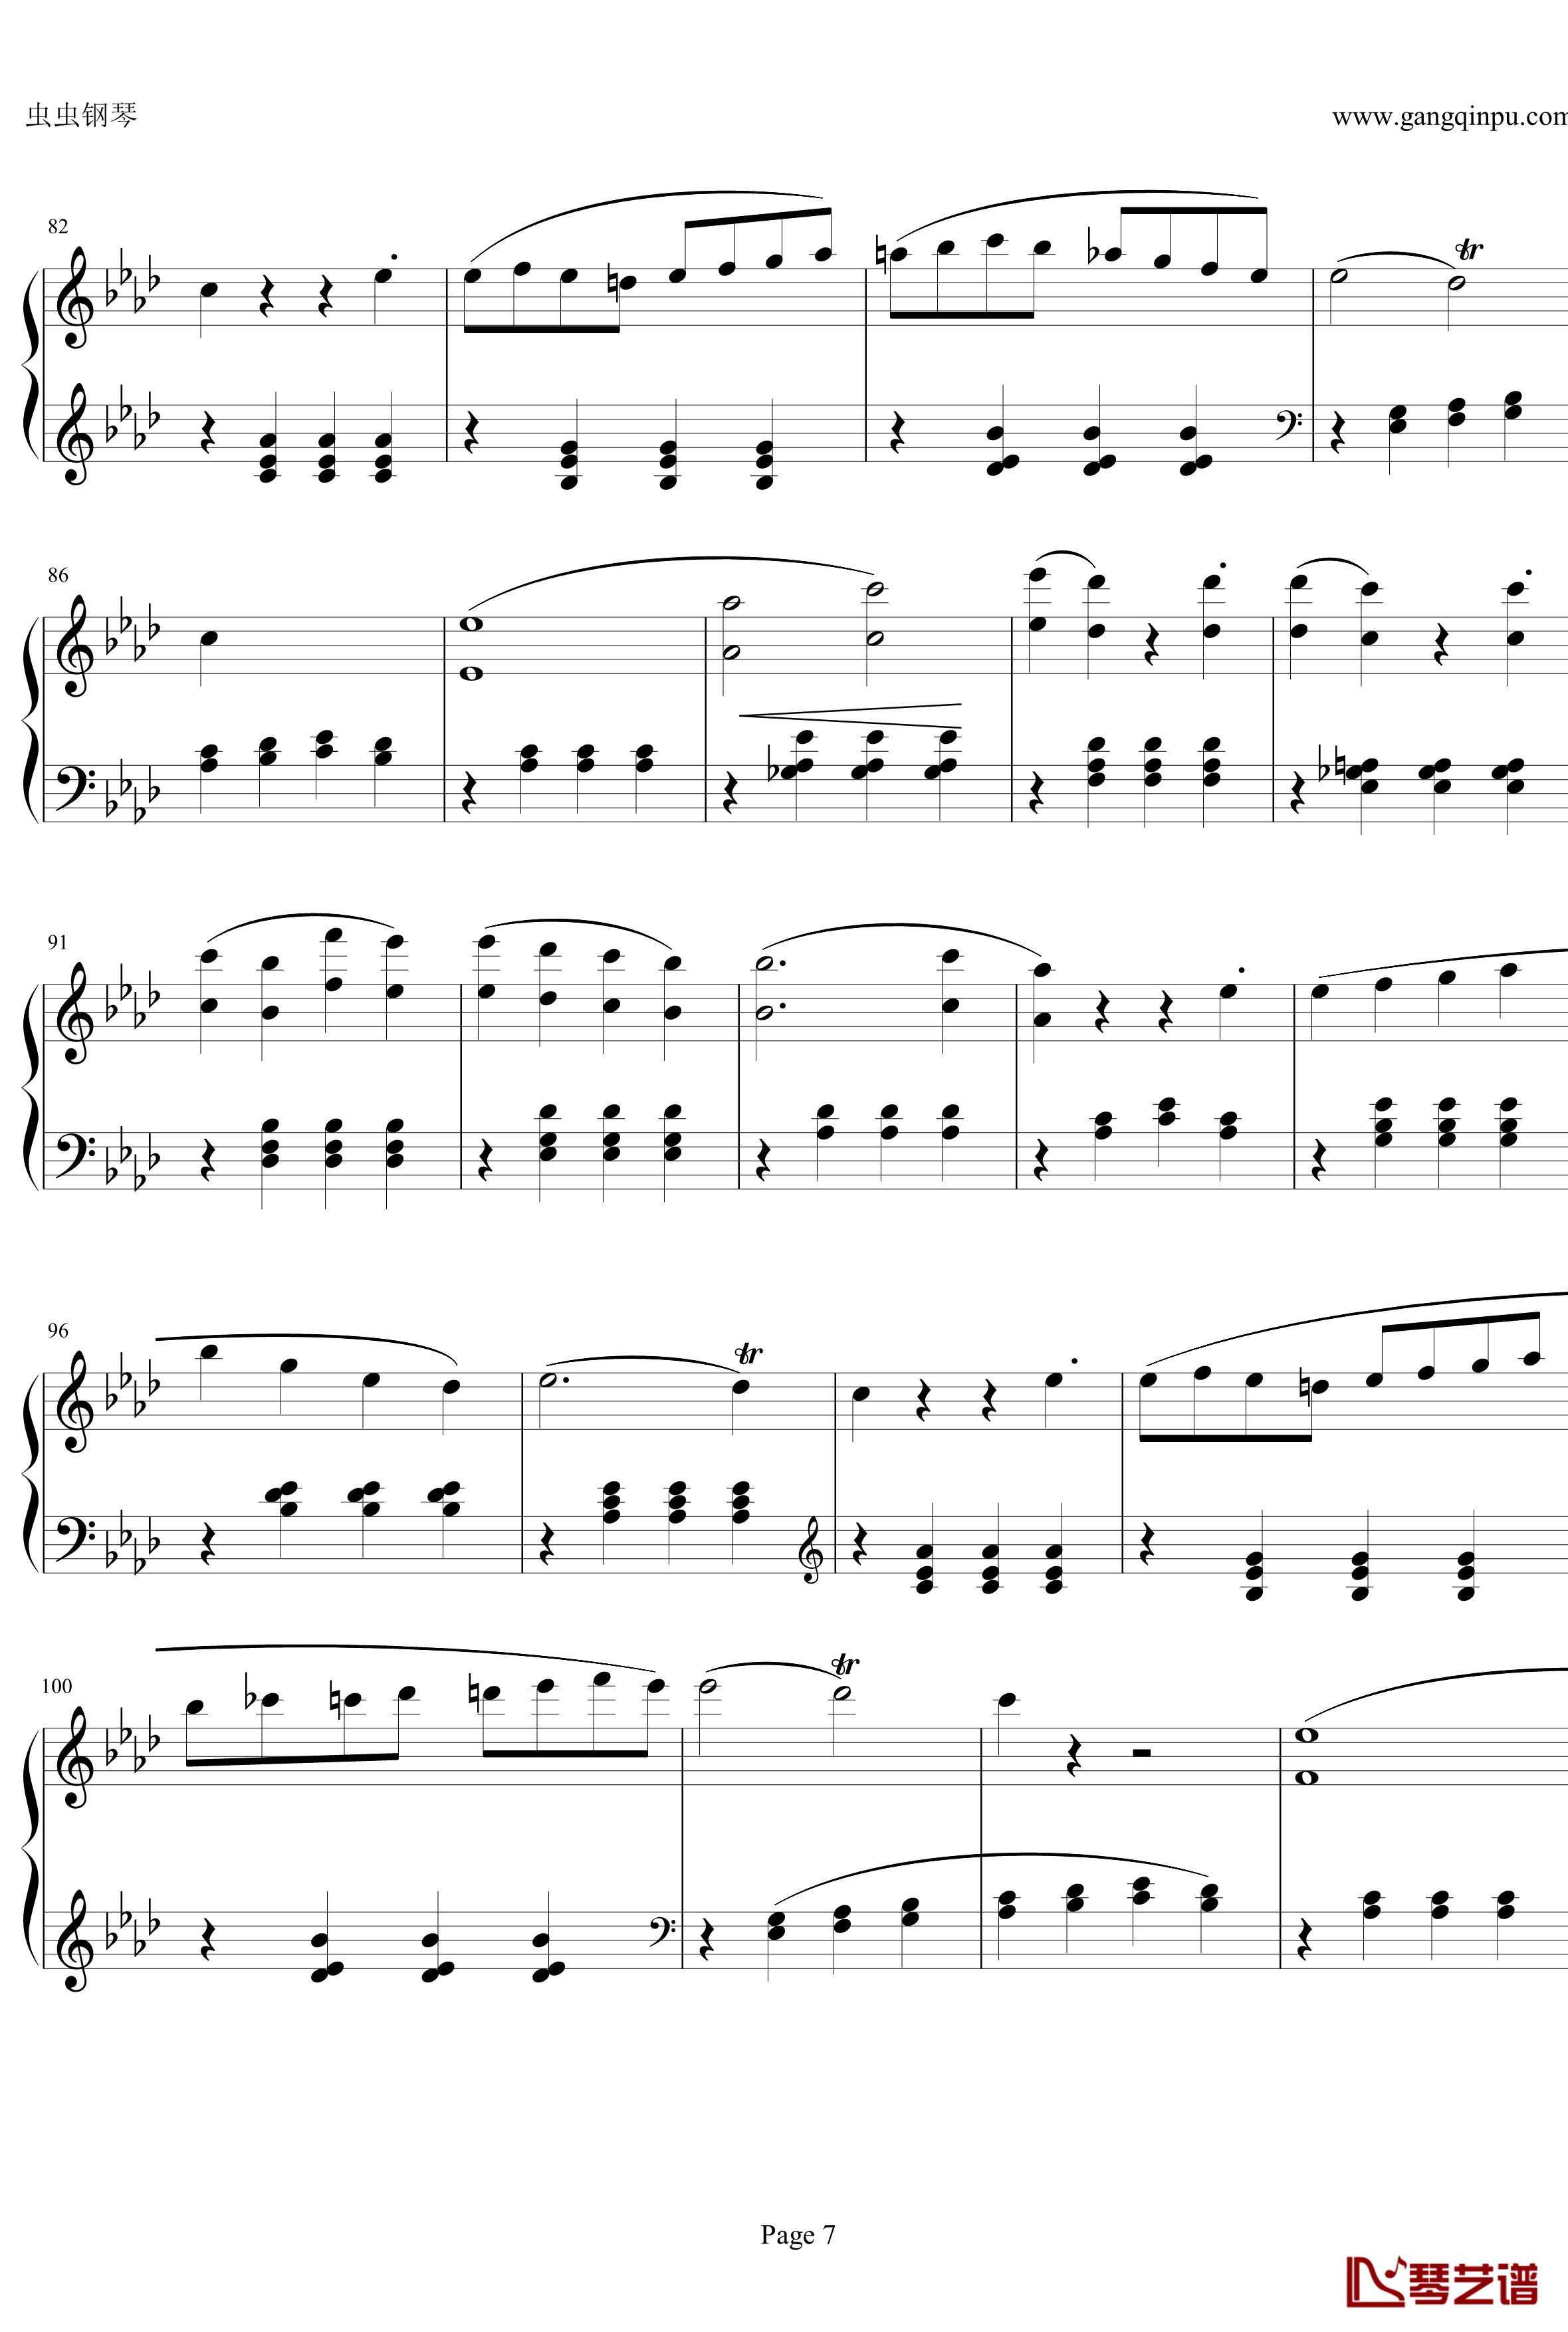 贝多芬第一钢琴奏鸣曲钢琴谱-作品2，第一号-贝多芬-beethoven7